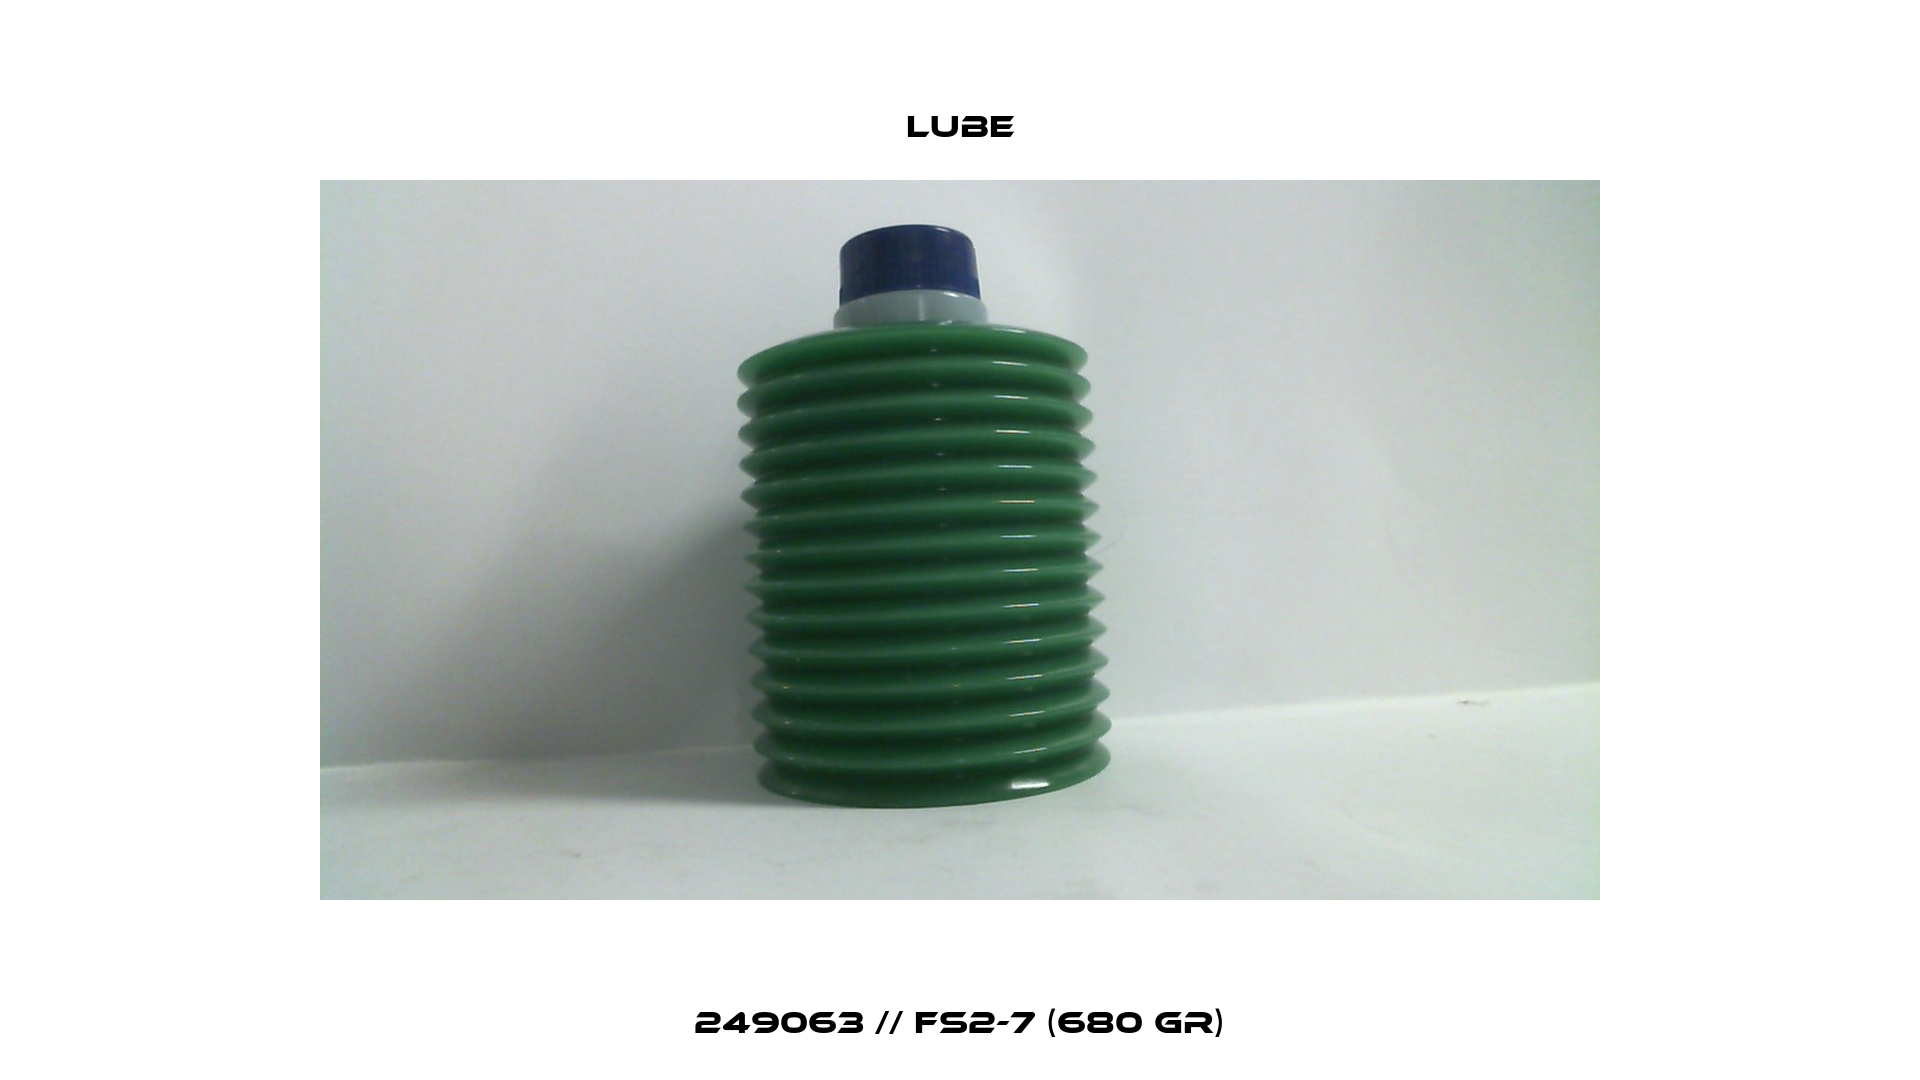 249063 // FS2-7 (680 gr) Lube